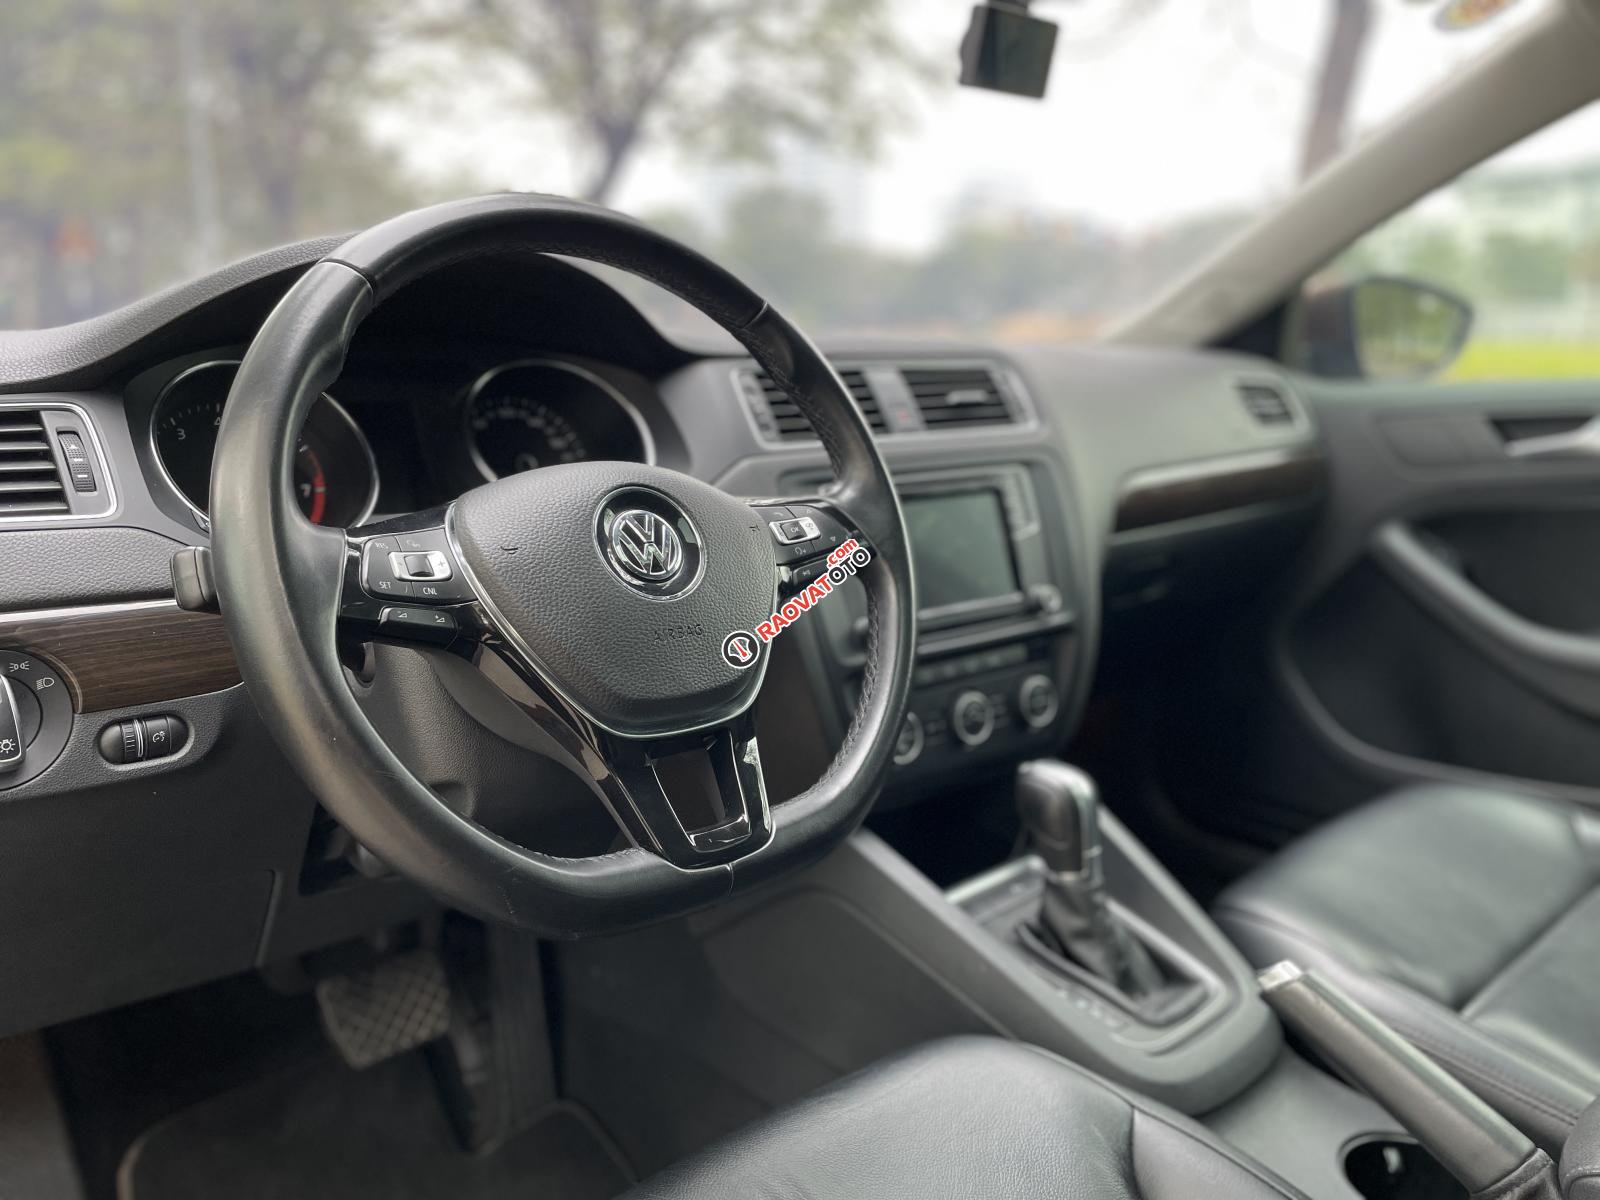 Cần bán Volkswagen Jetta 1.4 I4 TSI nhập khẩu Đức, đk 2018 - hỗ trợ trả góp lên đến 70%-2